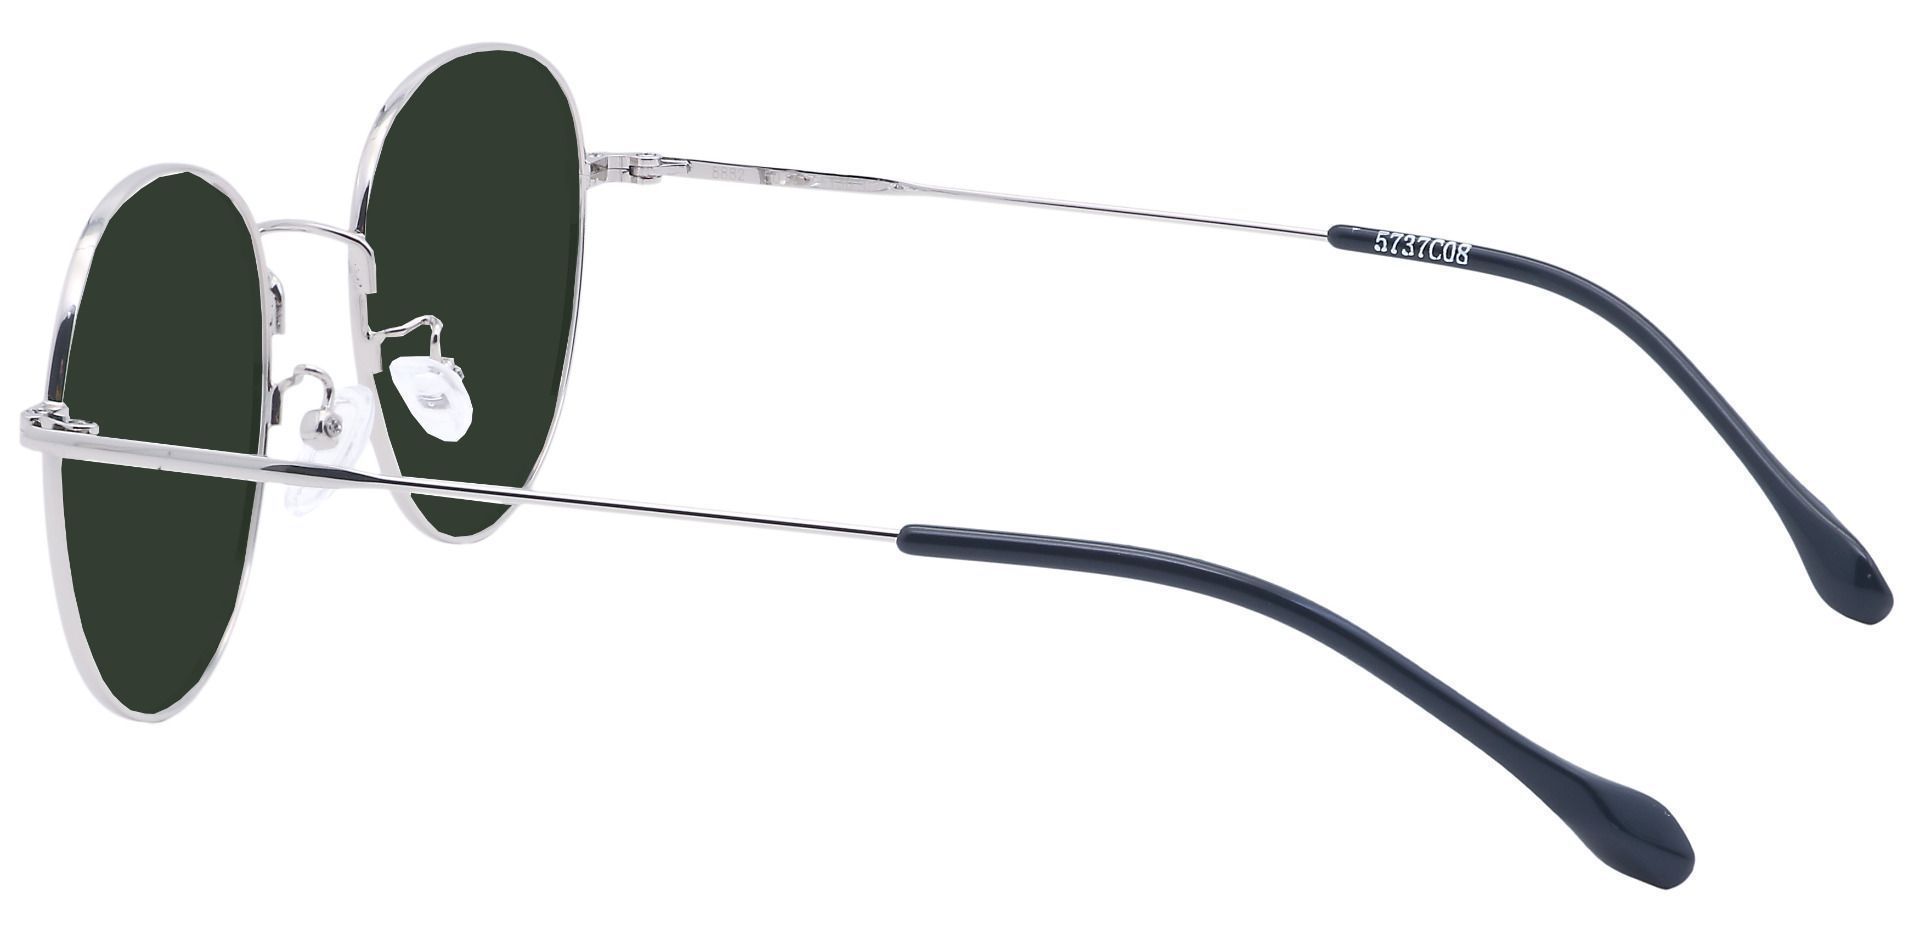 Miller Oval Progressive Sunglasses - Gray Frame With Green Lenses